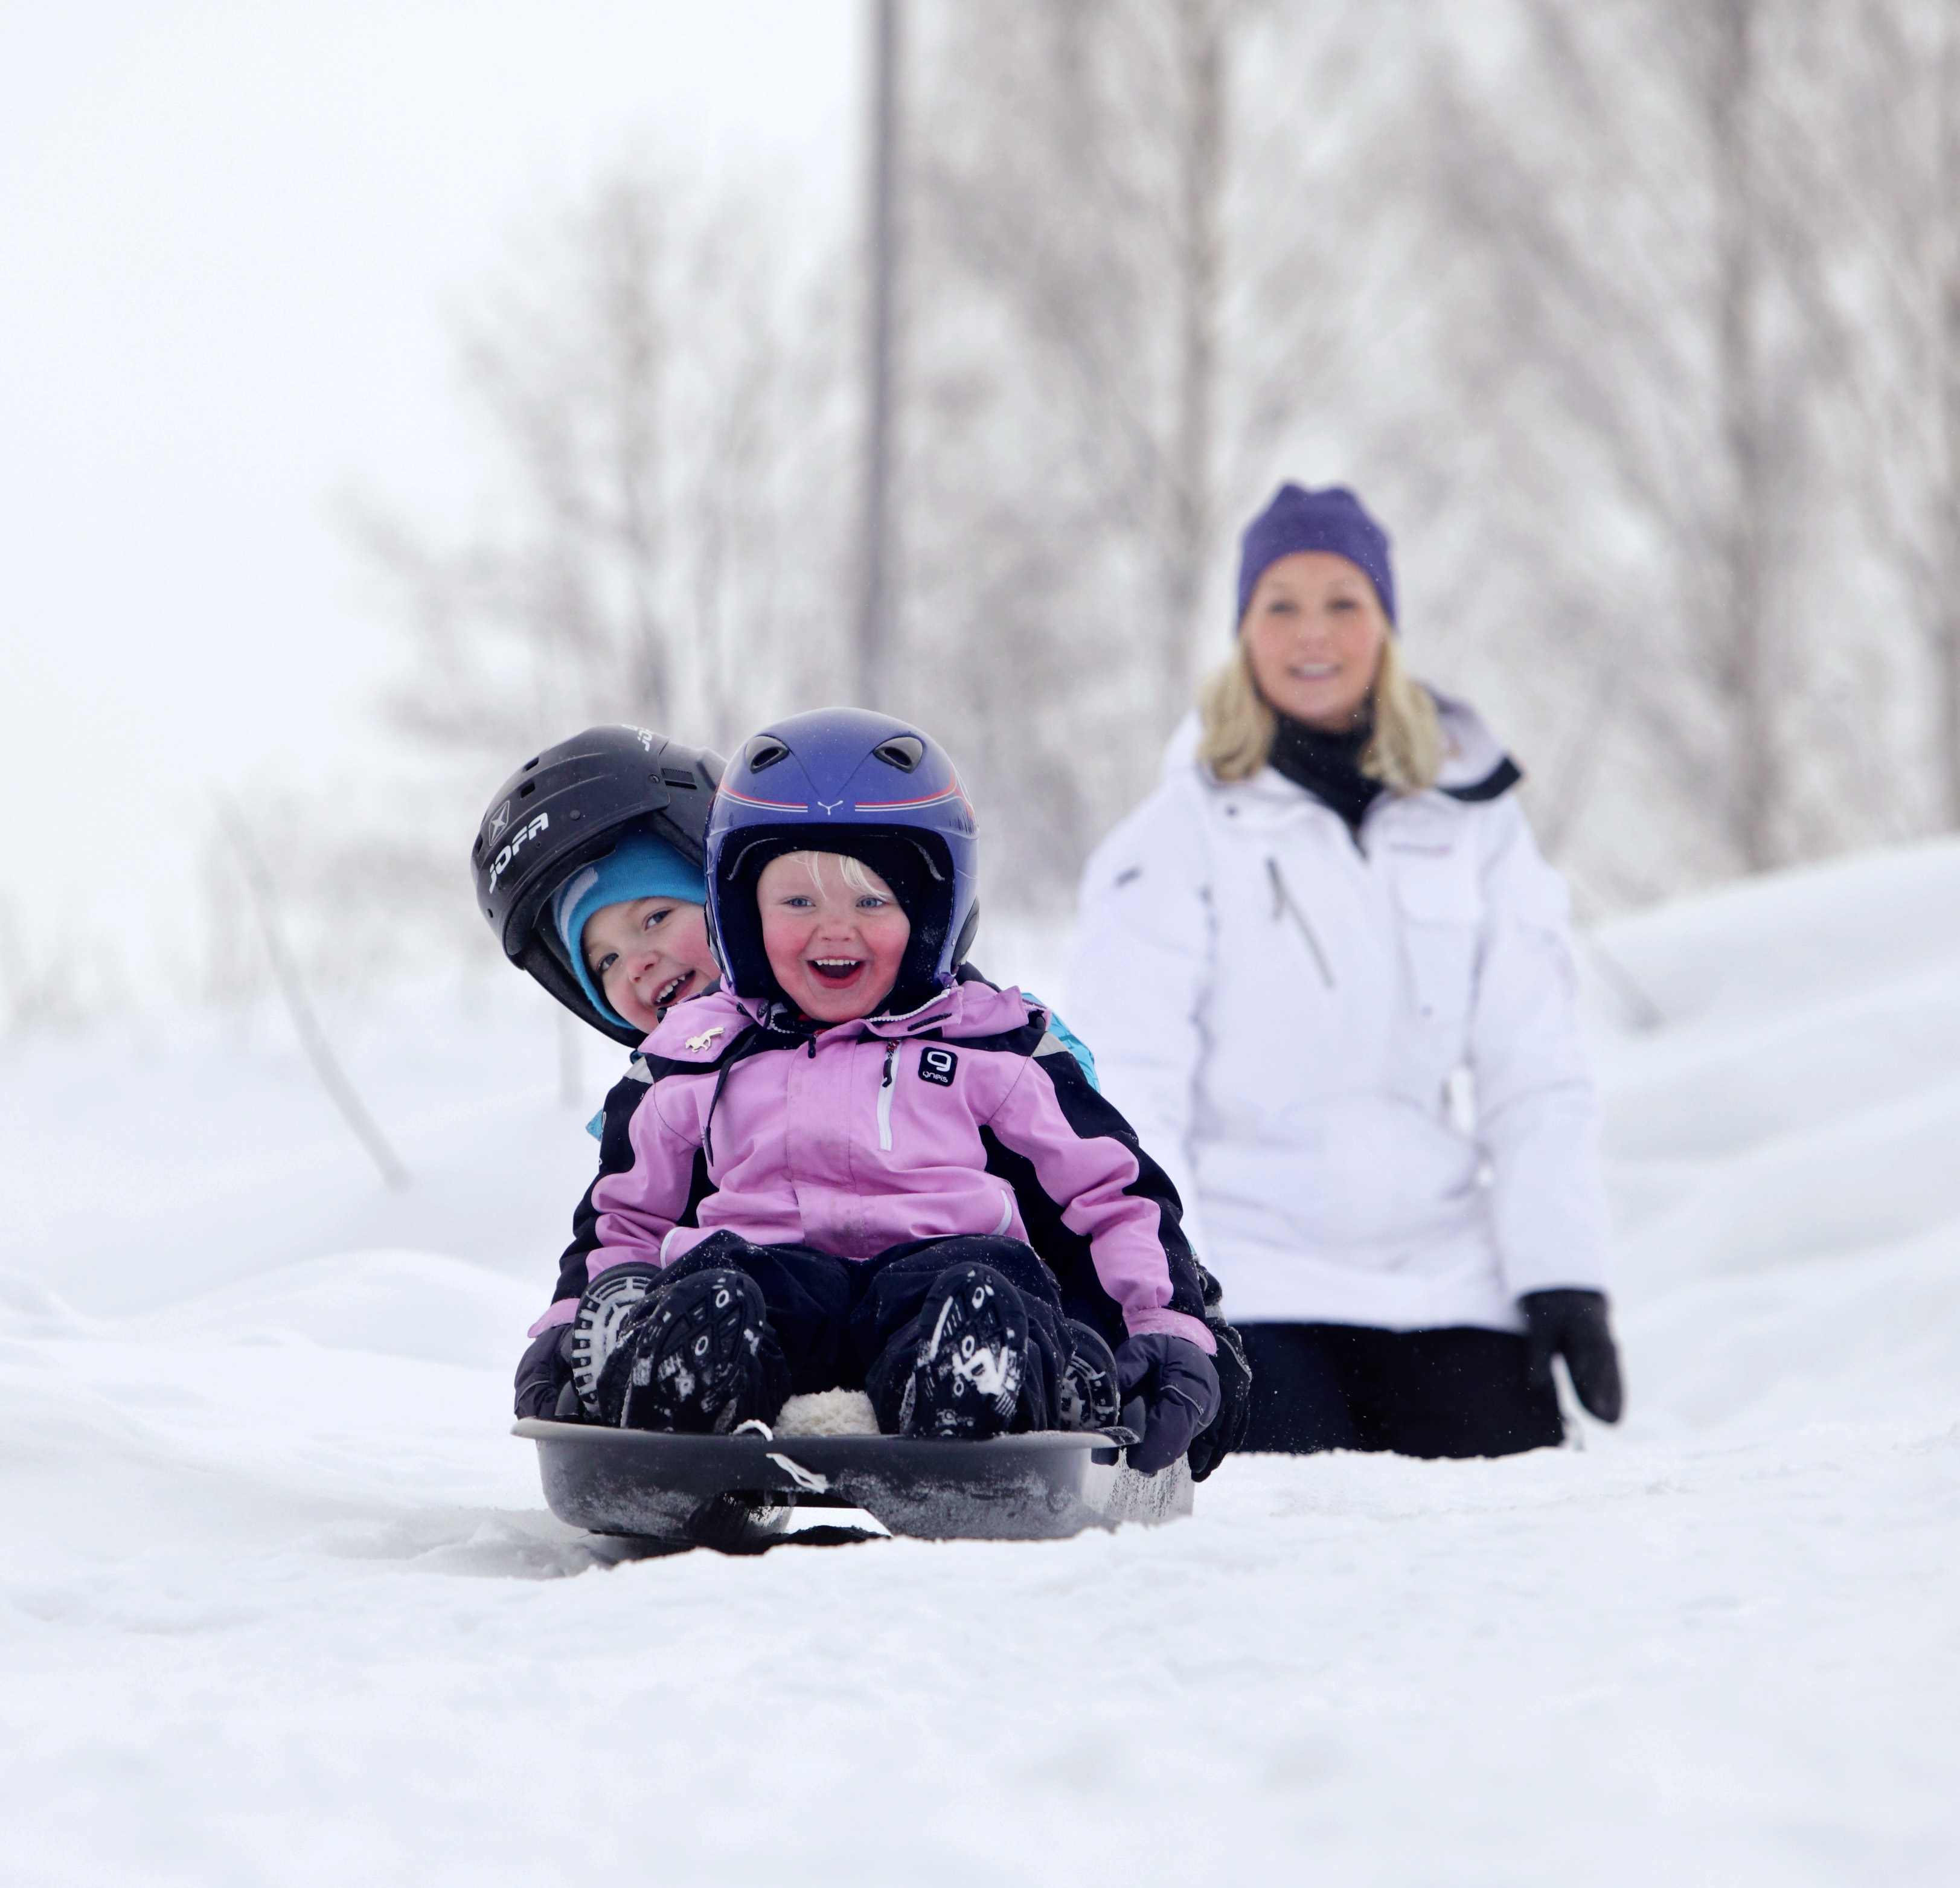 Två vinterklädda små barn åker pulka nerför en stor snöig backe.